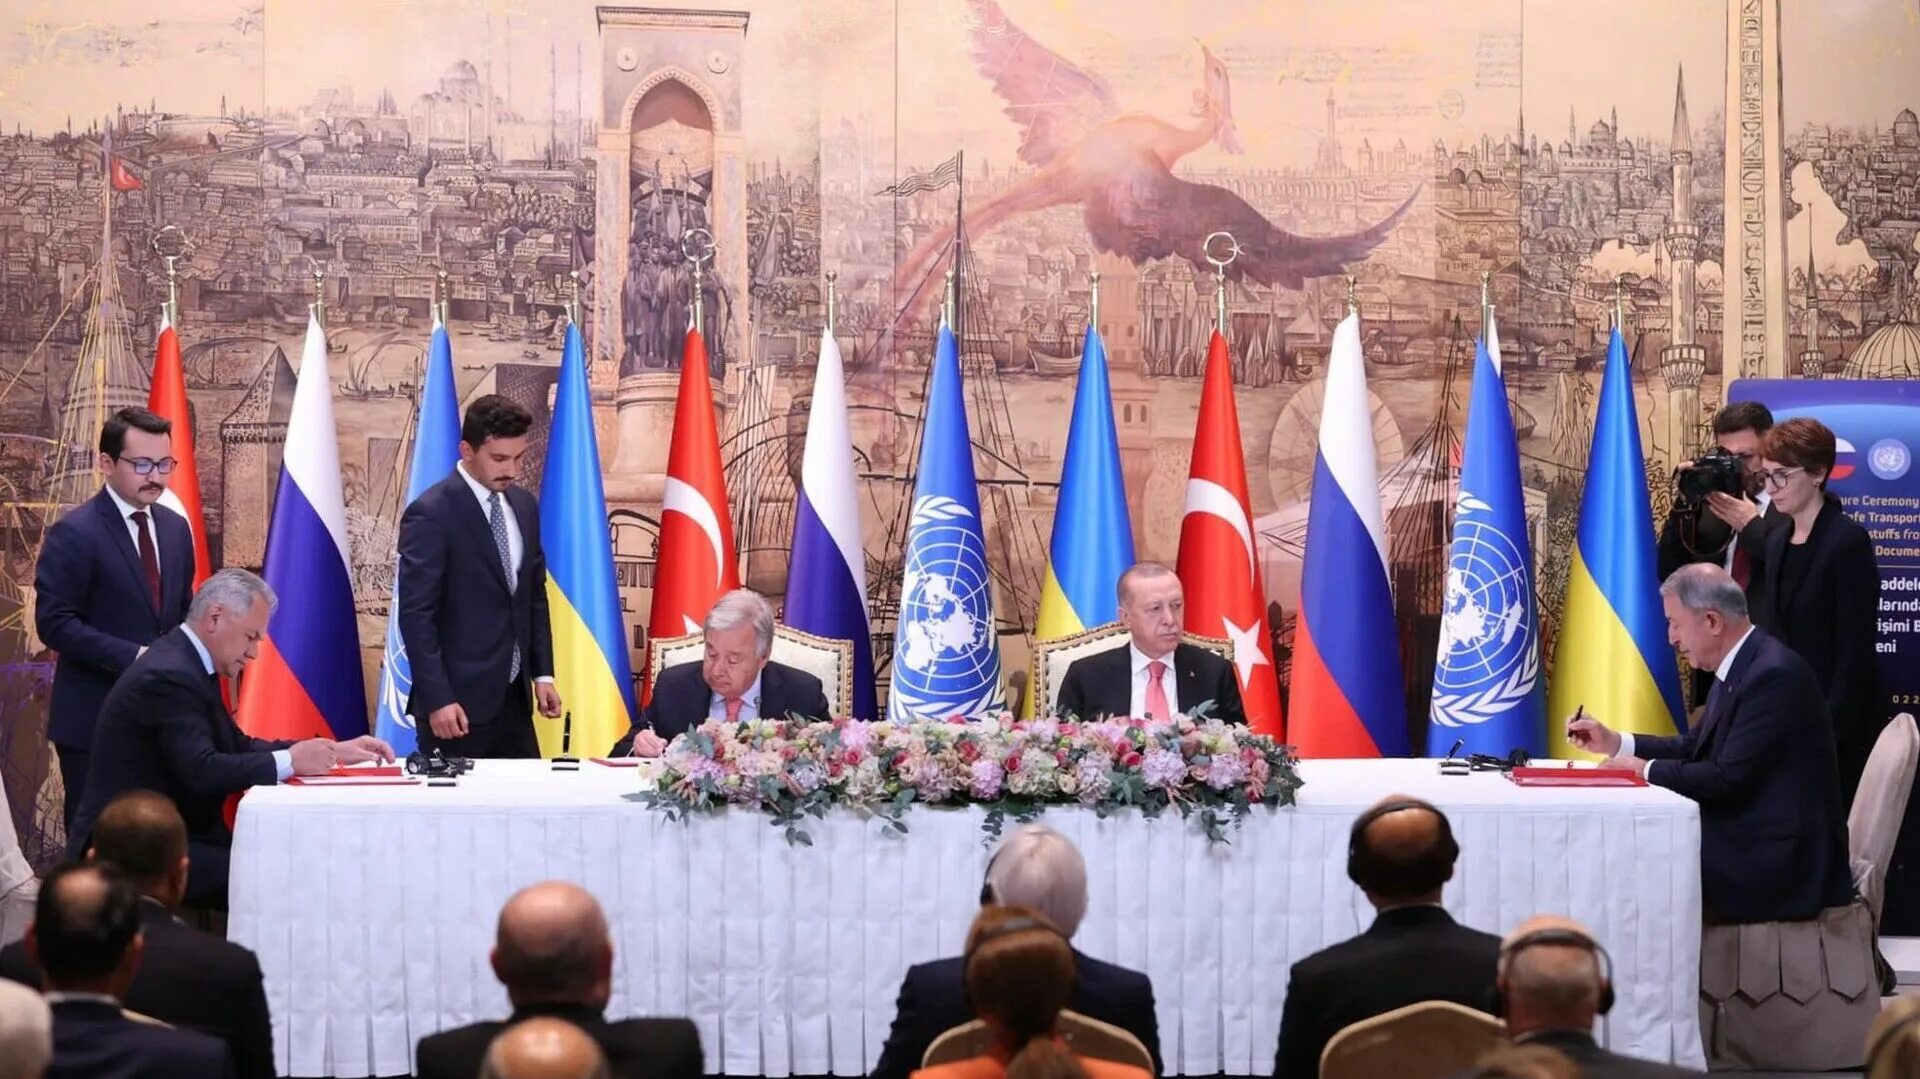 Стамбульский договор с киевом. ООН Турция. Россия и ЕС. Переговоры в Стамбуле фото. Россия Турция Азербайджан.